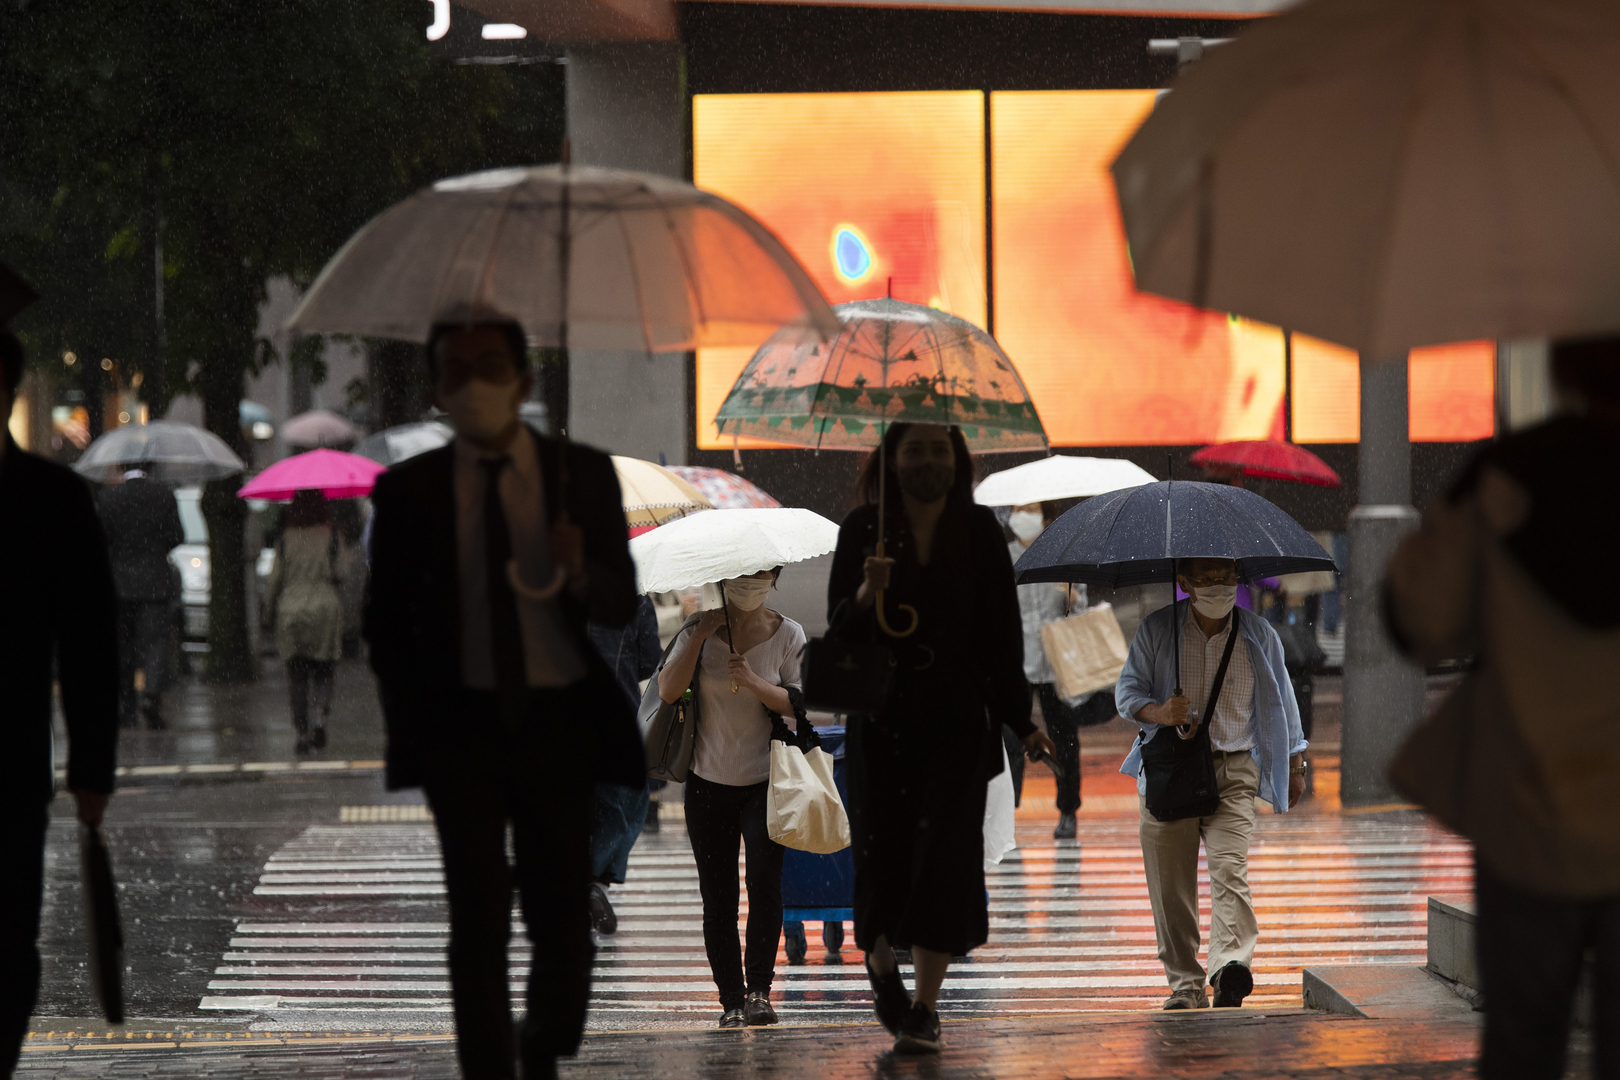 اليابان تستعد للأولمبياد بتمديد حالة الطوارئ المتعلقة بكورونا